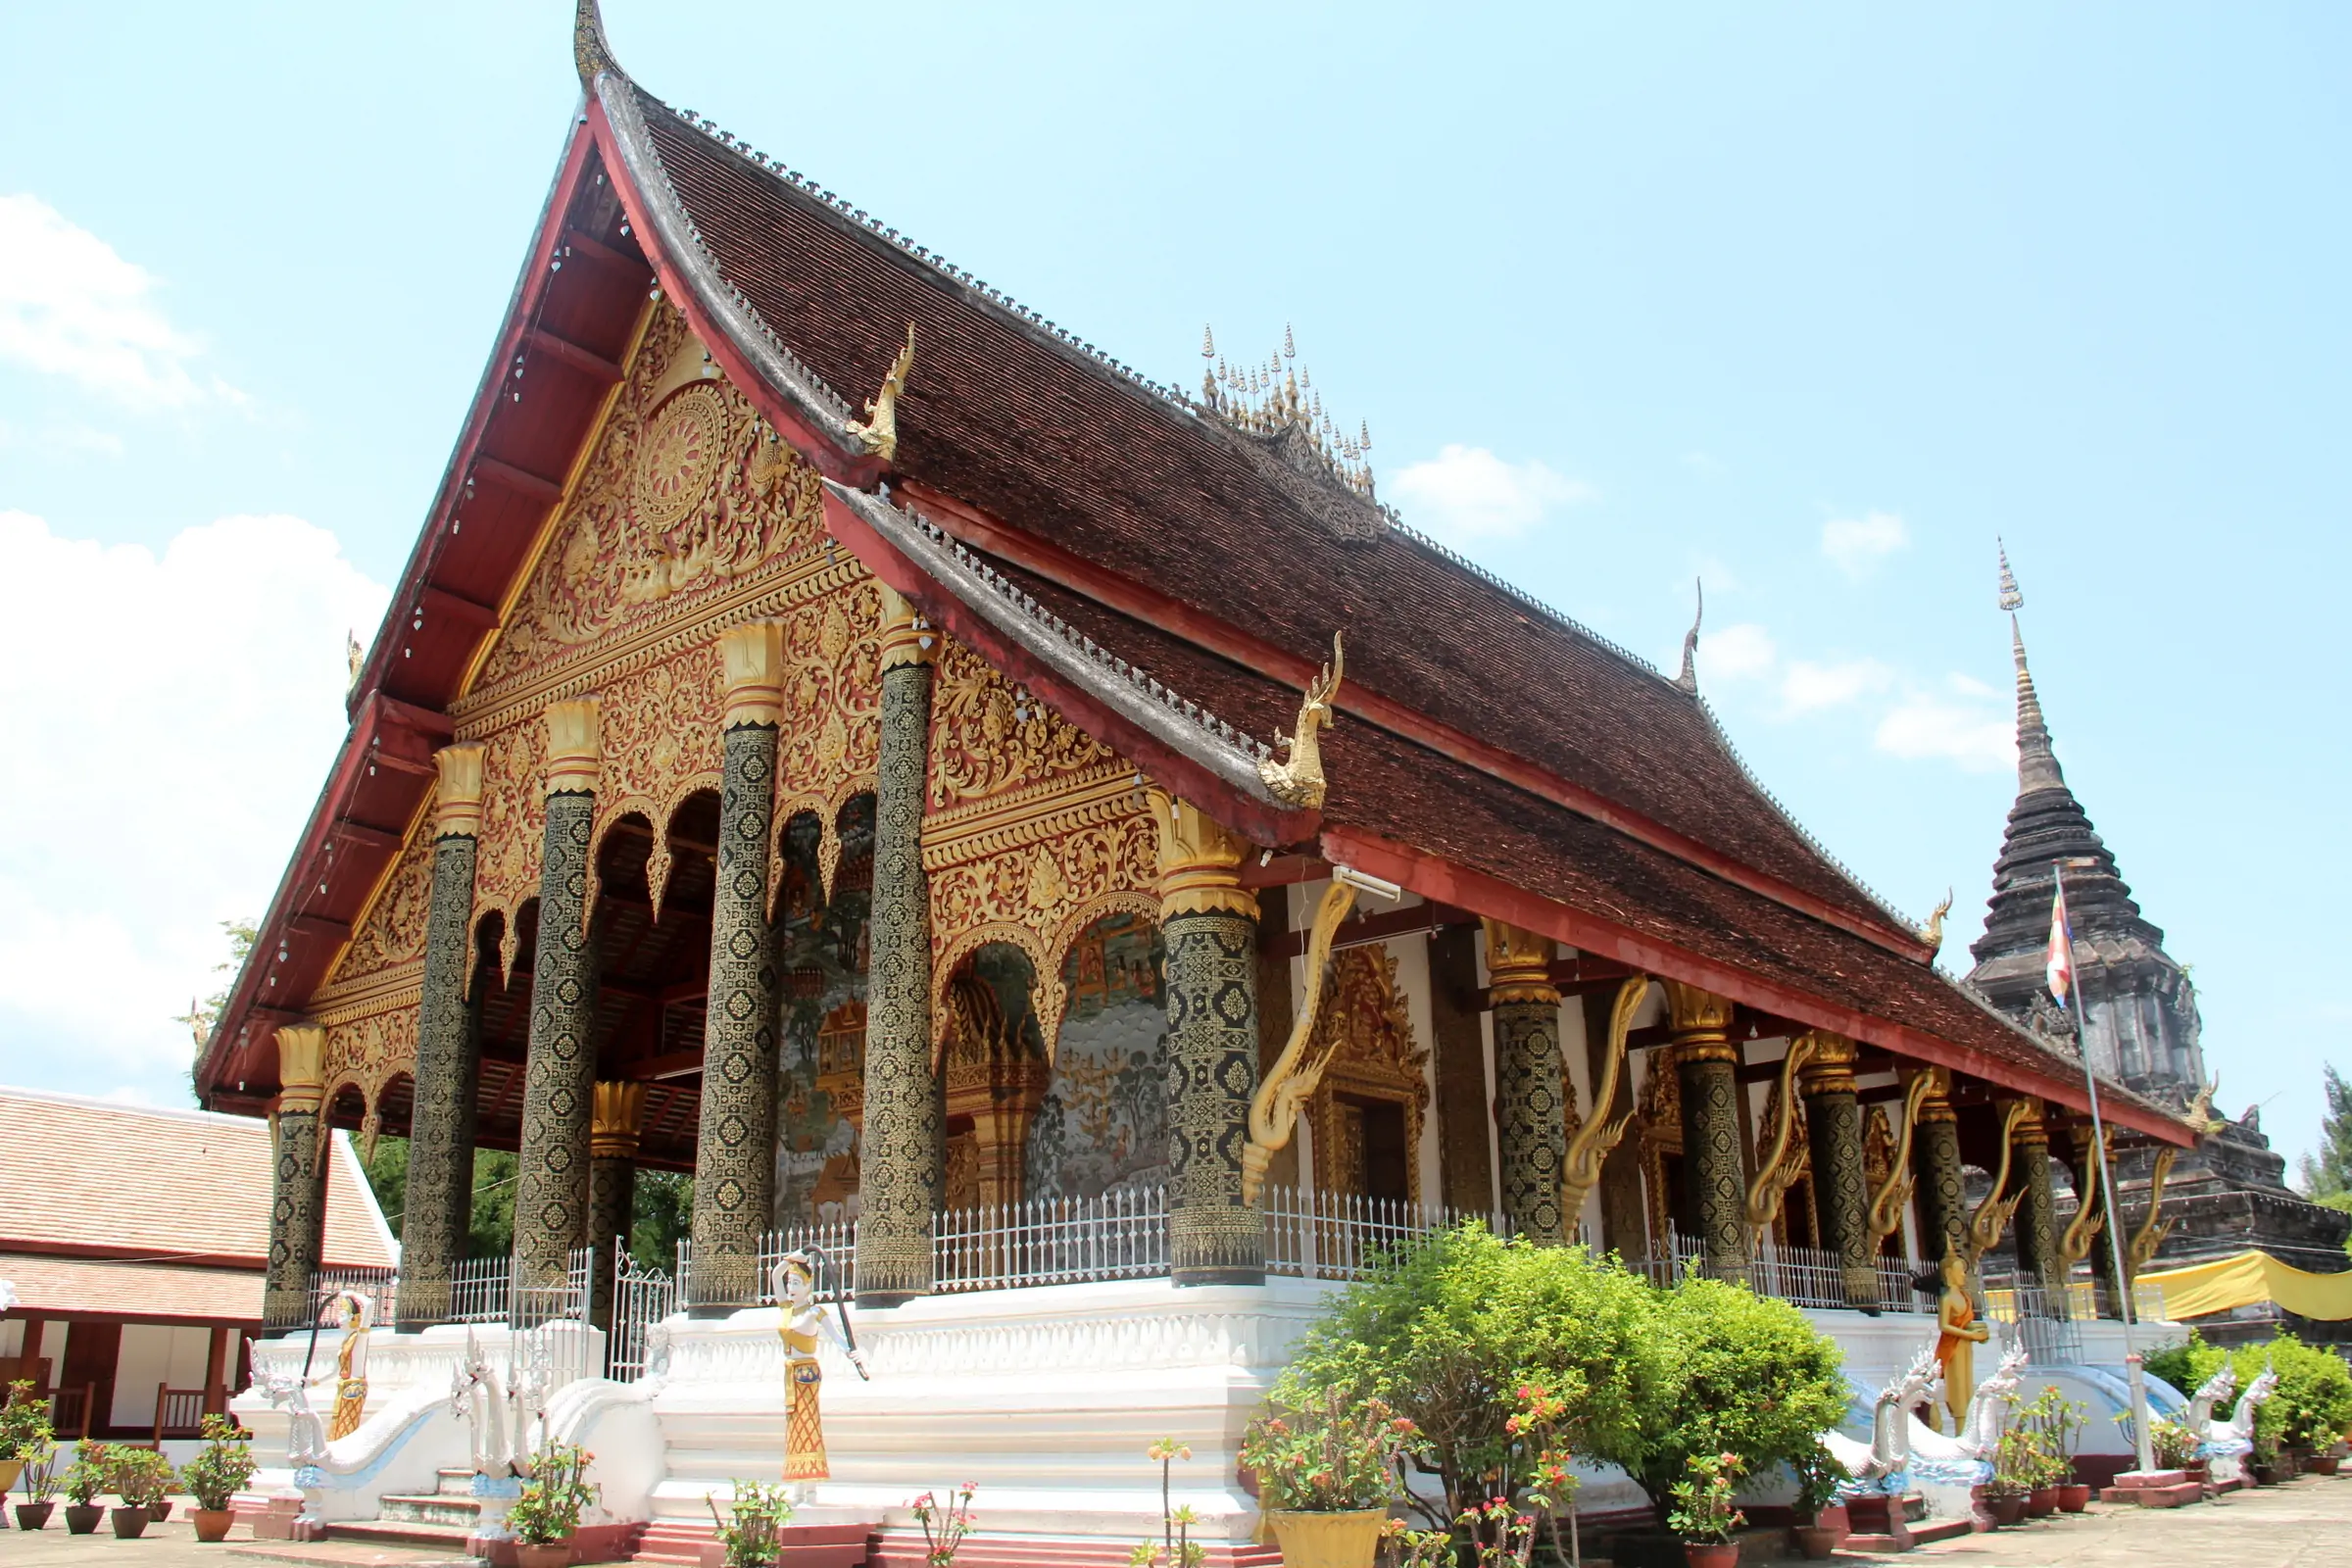 Day 5: Luang Prabang – City tour fullday (B)